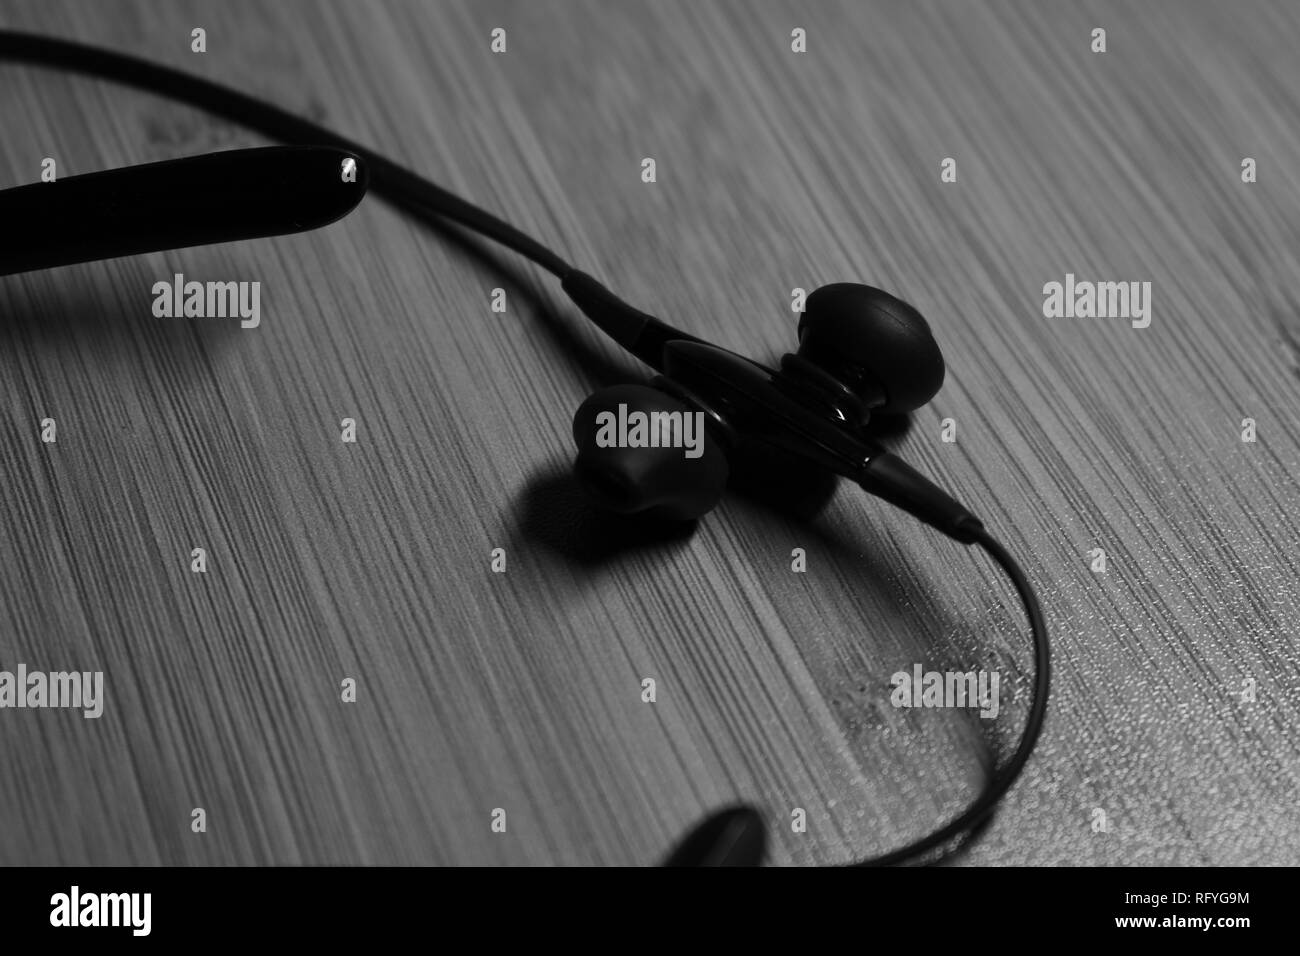 Une paire d'écouteurs Bluetooth. En noir & blanc Banque D'Images